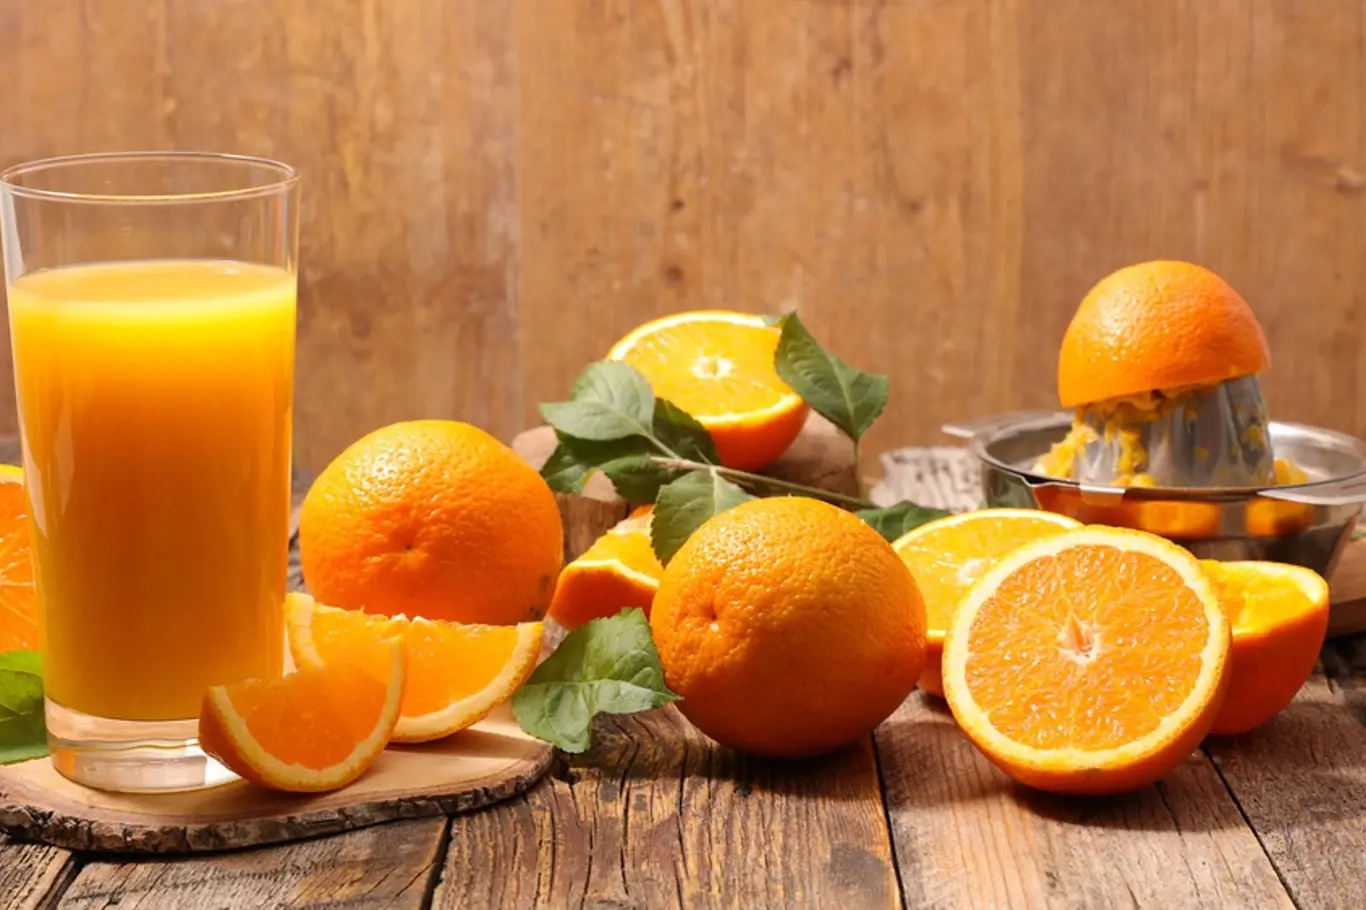 Co s vámi udělá sklenka pomerančového džusu denně?